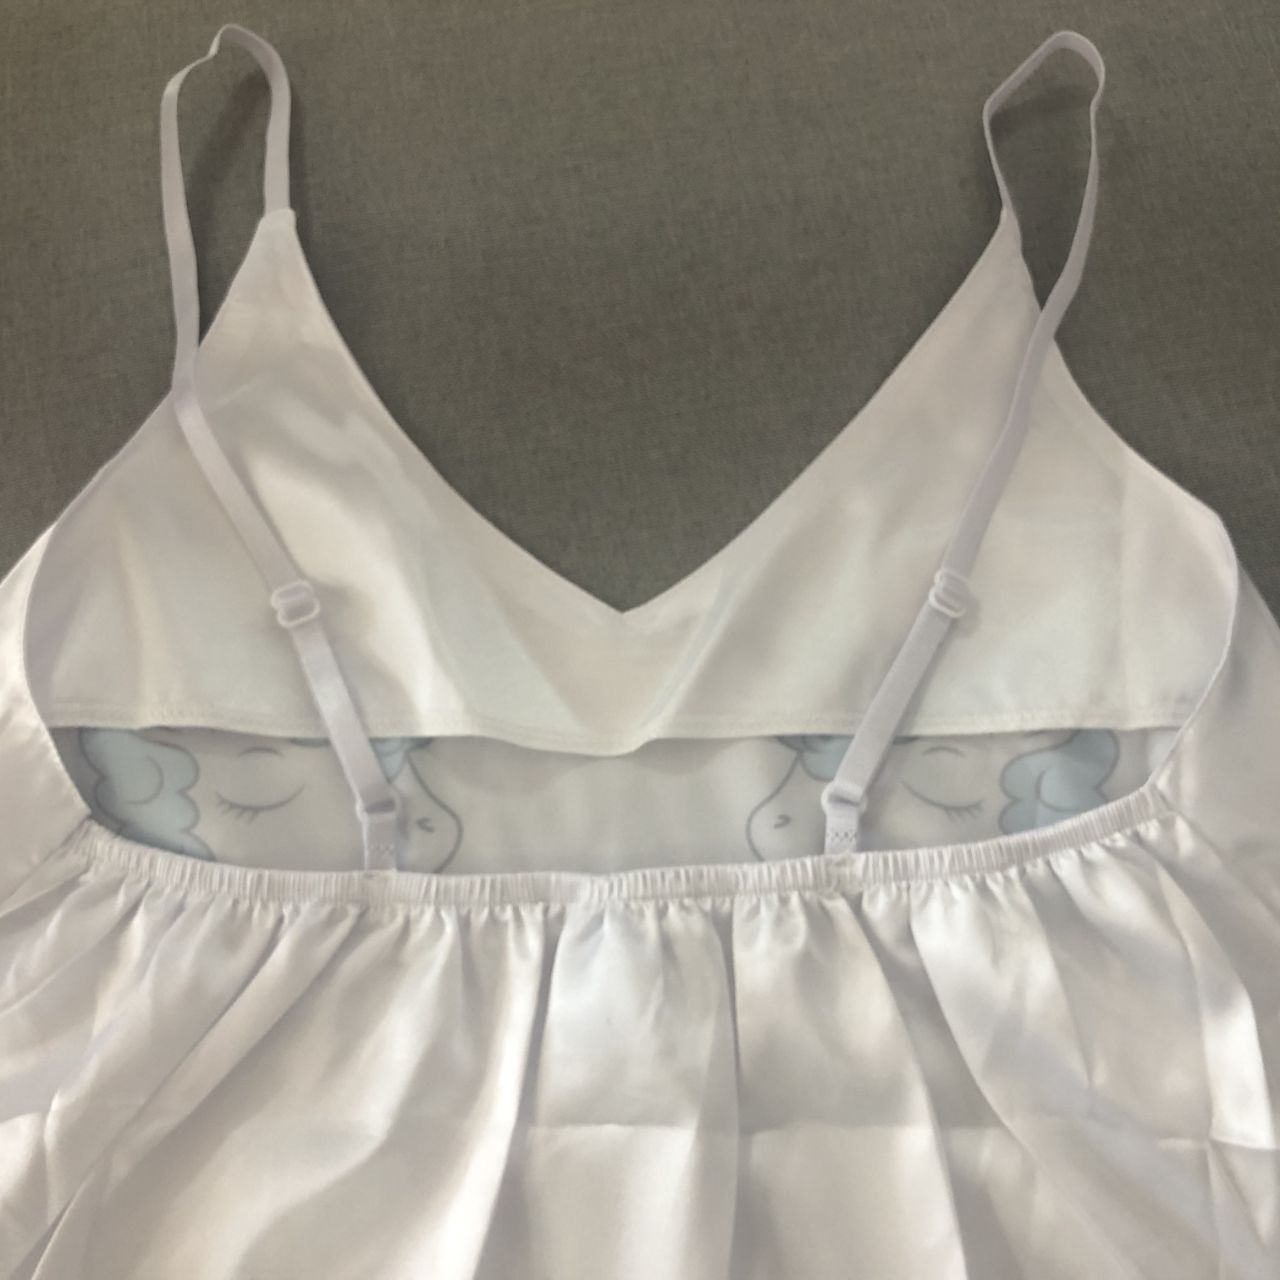 QWEEK jednorożec piżama dla kobiety jedwabiu Sexy Pijamas kobiety bielizna nocna Satin lato piżama Femme V Neck odzież domowa 2020 dropshipping